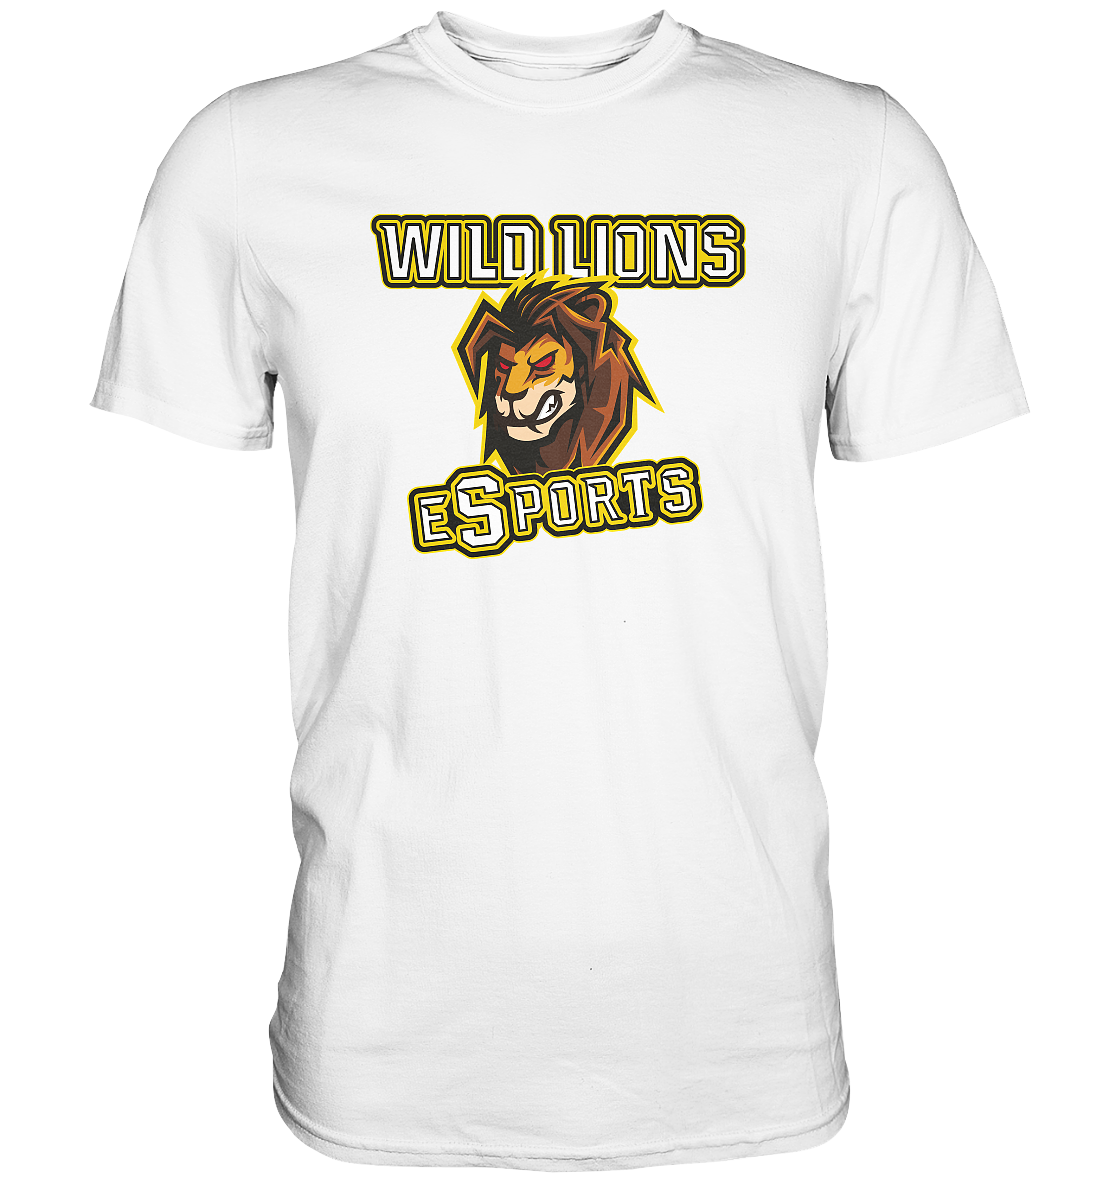 WILD LIONS ESPORTS - Basic Shirt